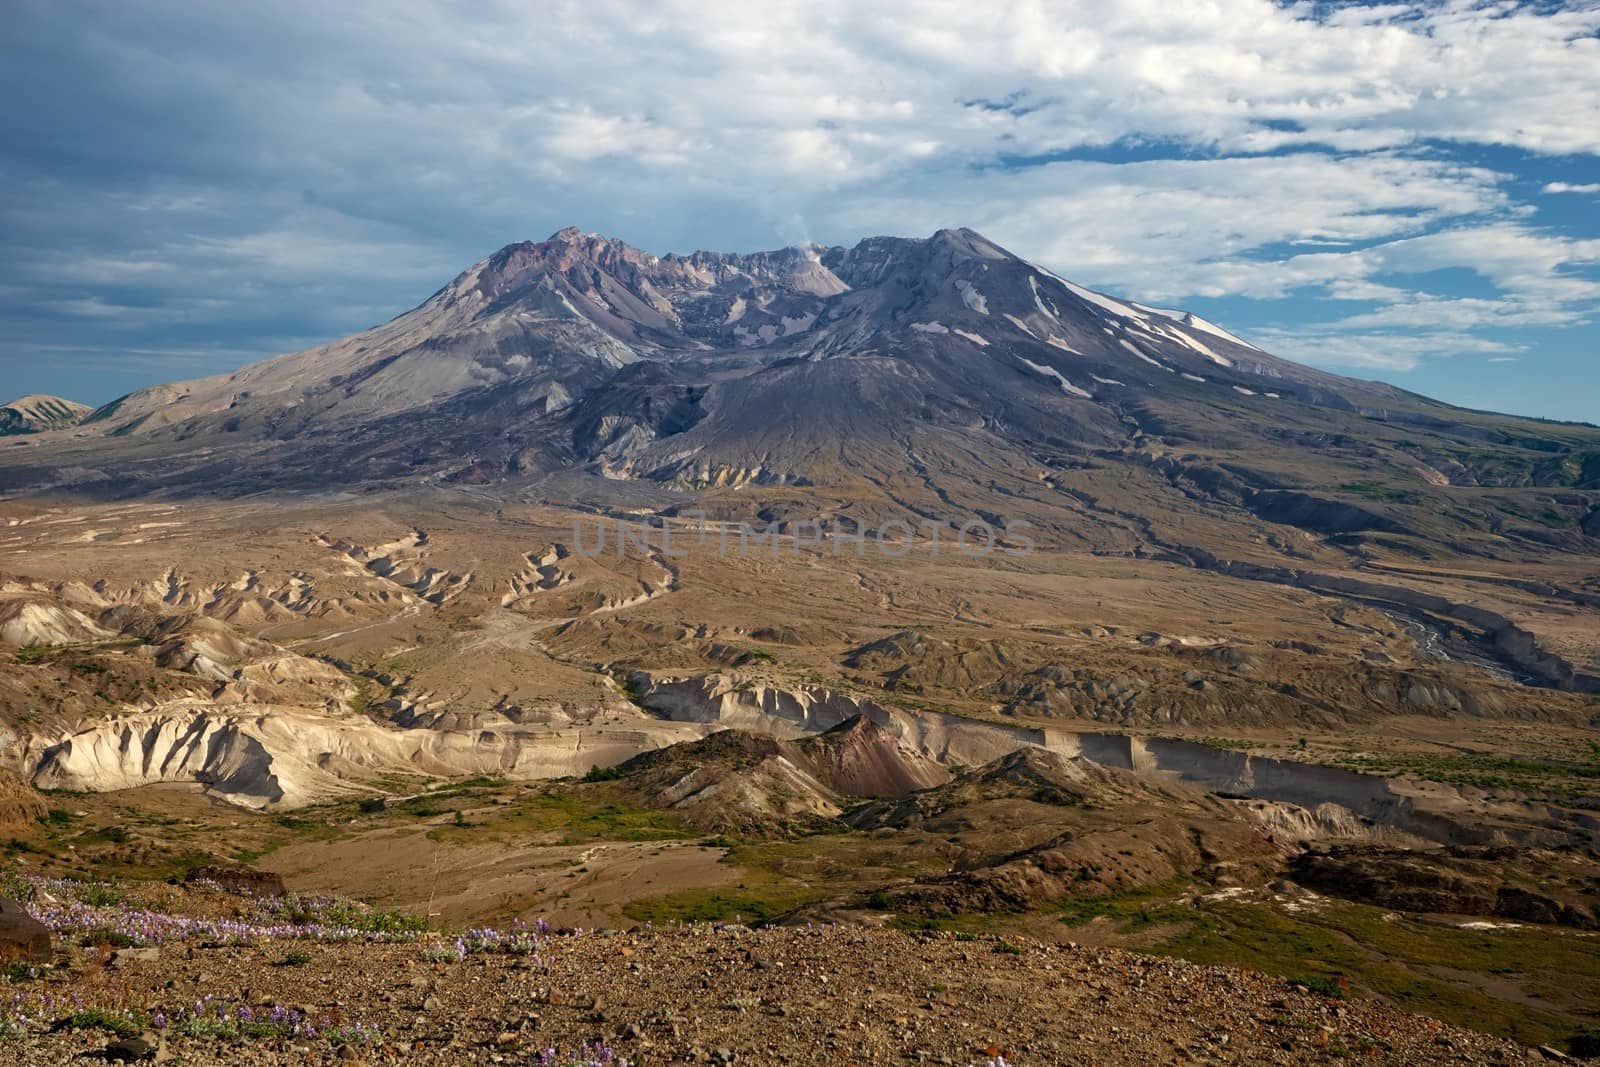 Mount St. Helens National Volcanic Monument, Washington, USA